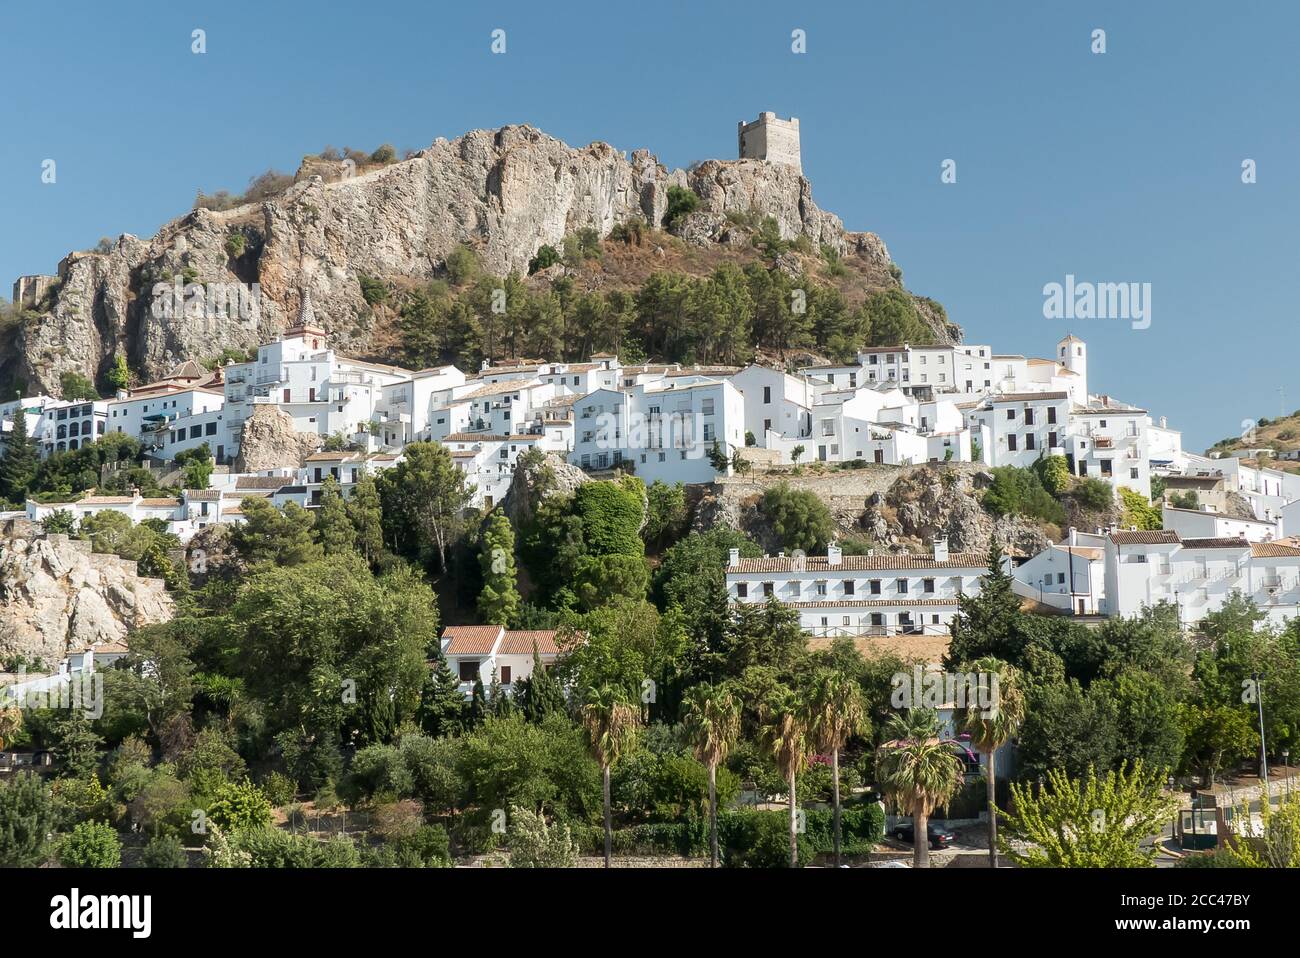 Andalucia in Spain: the pretty pueblo blanco of Zahara de la Sierra, and the Torre del Homenaje (Tower of Tribute) Stock Photo